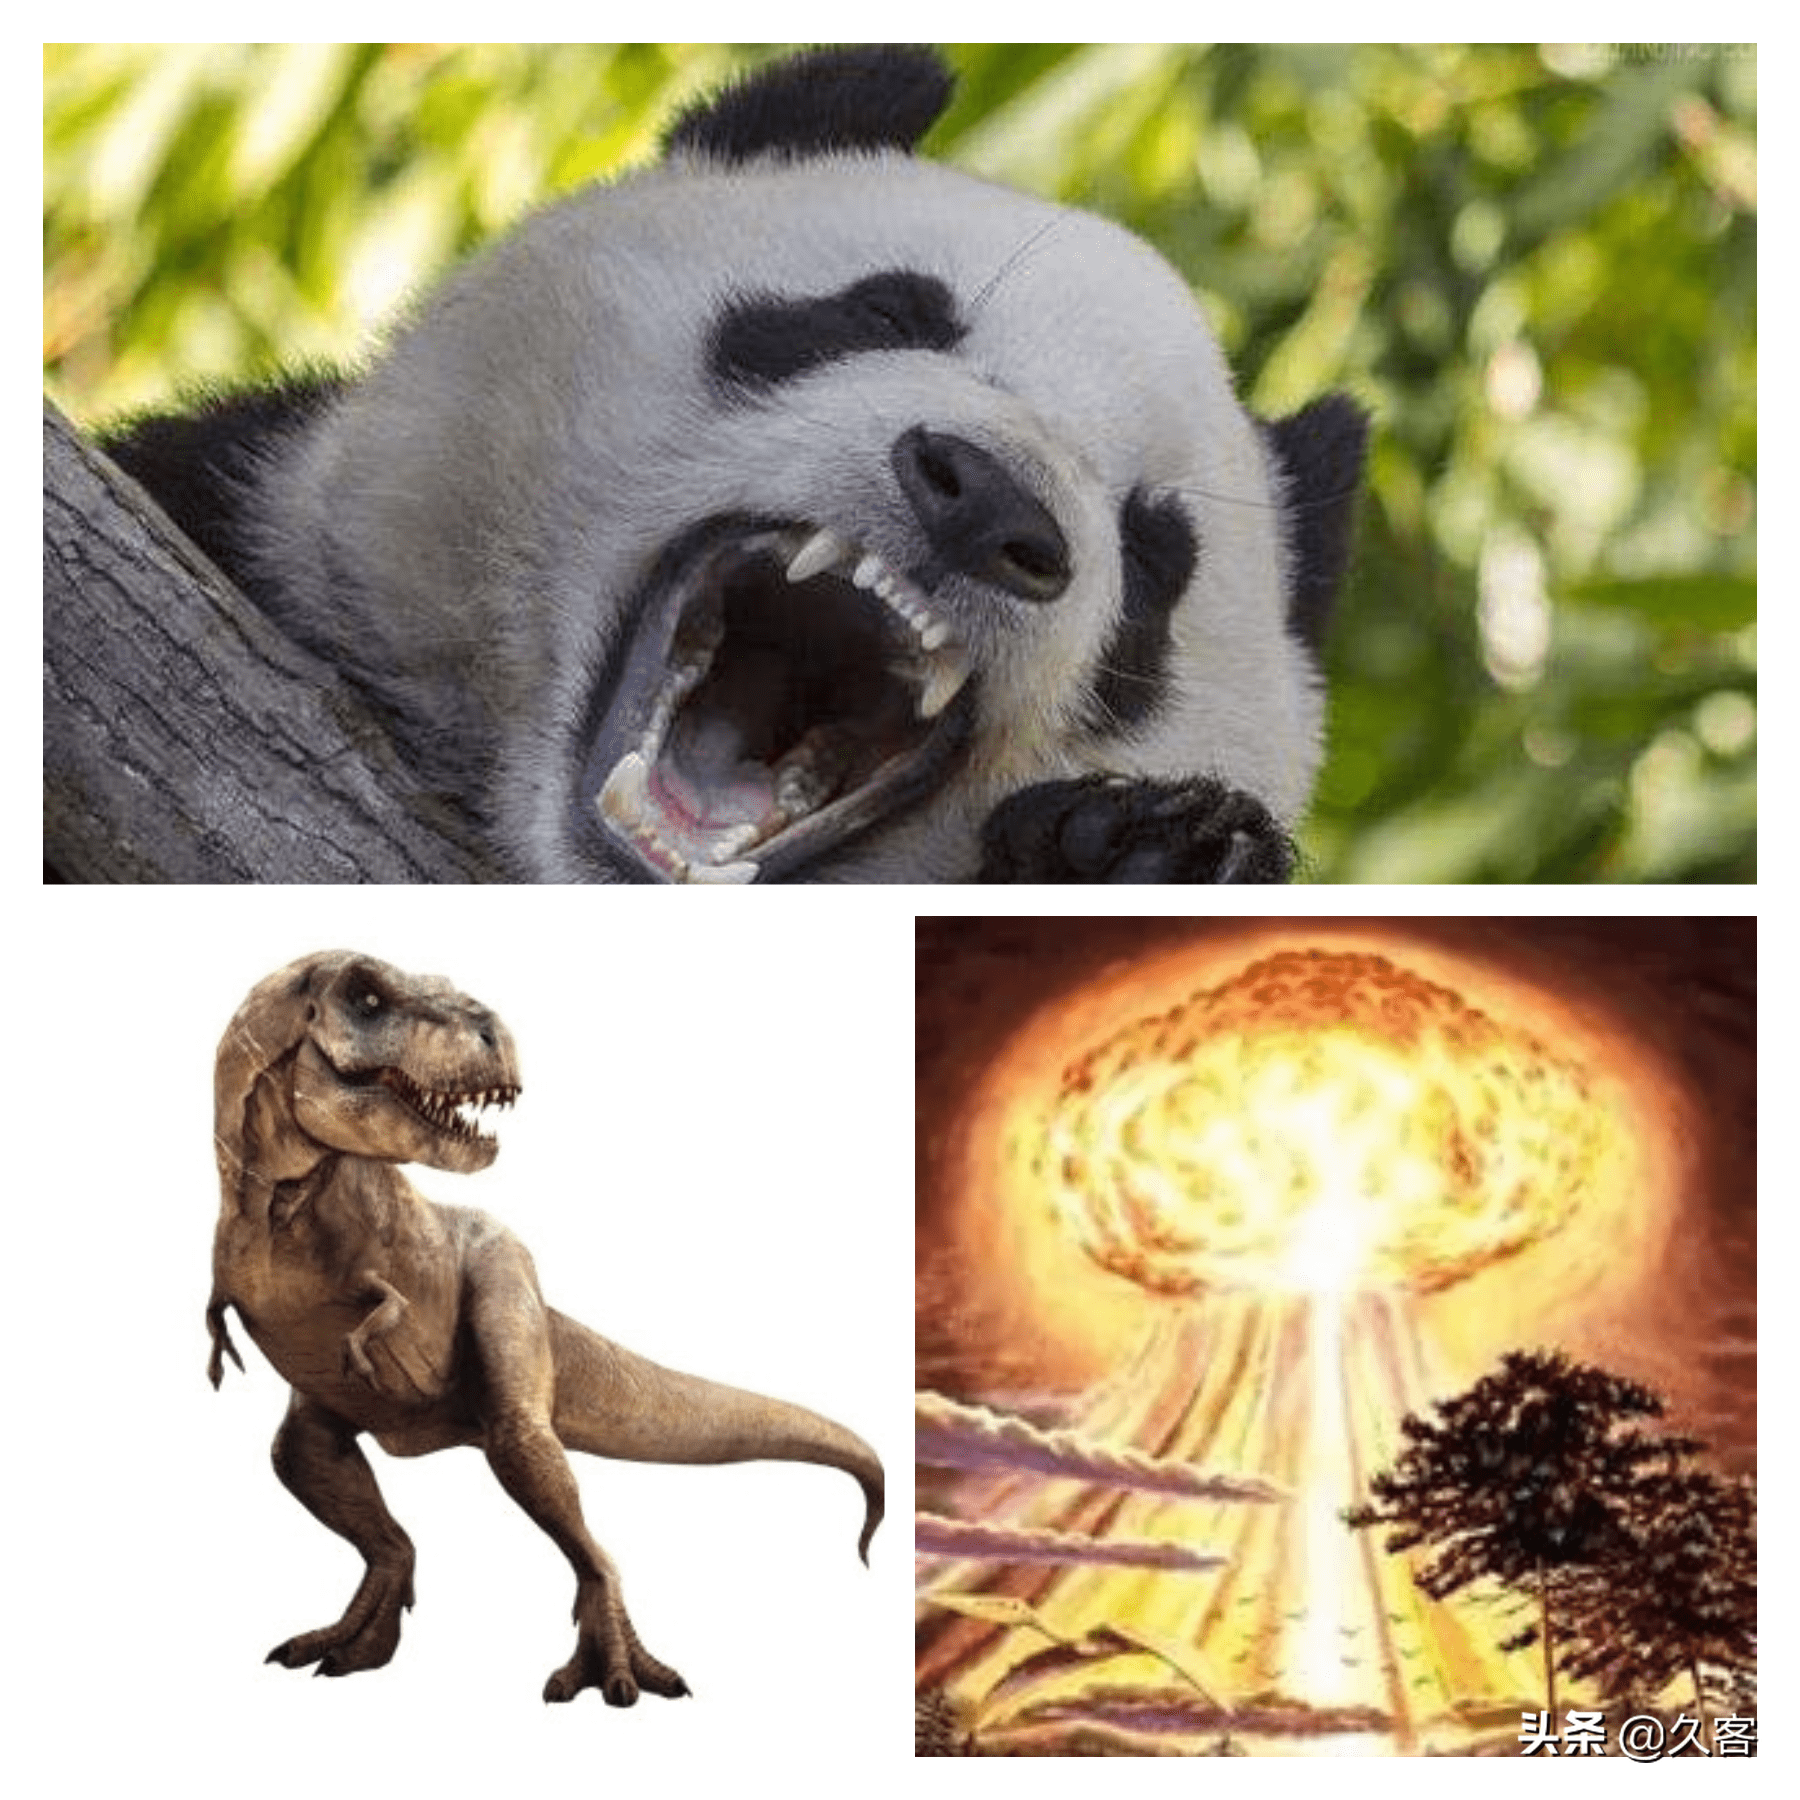 食铁兽的强势崛起与恐龙的突然灭绝01 上古神话中关于熊猫的传说相传